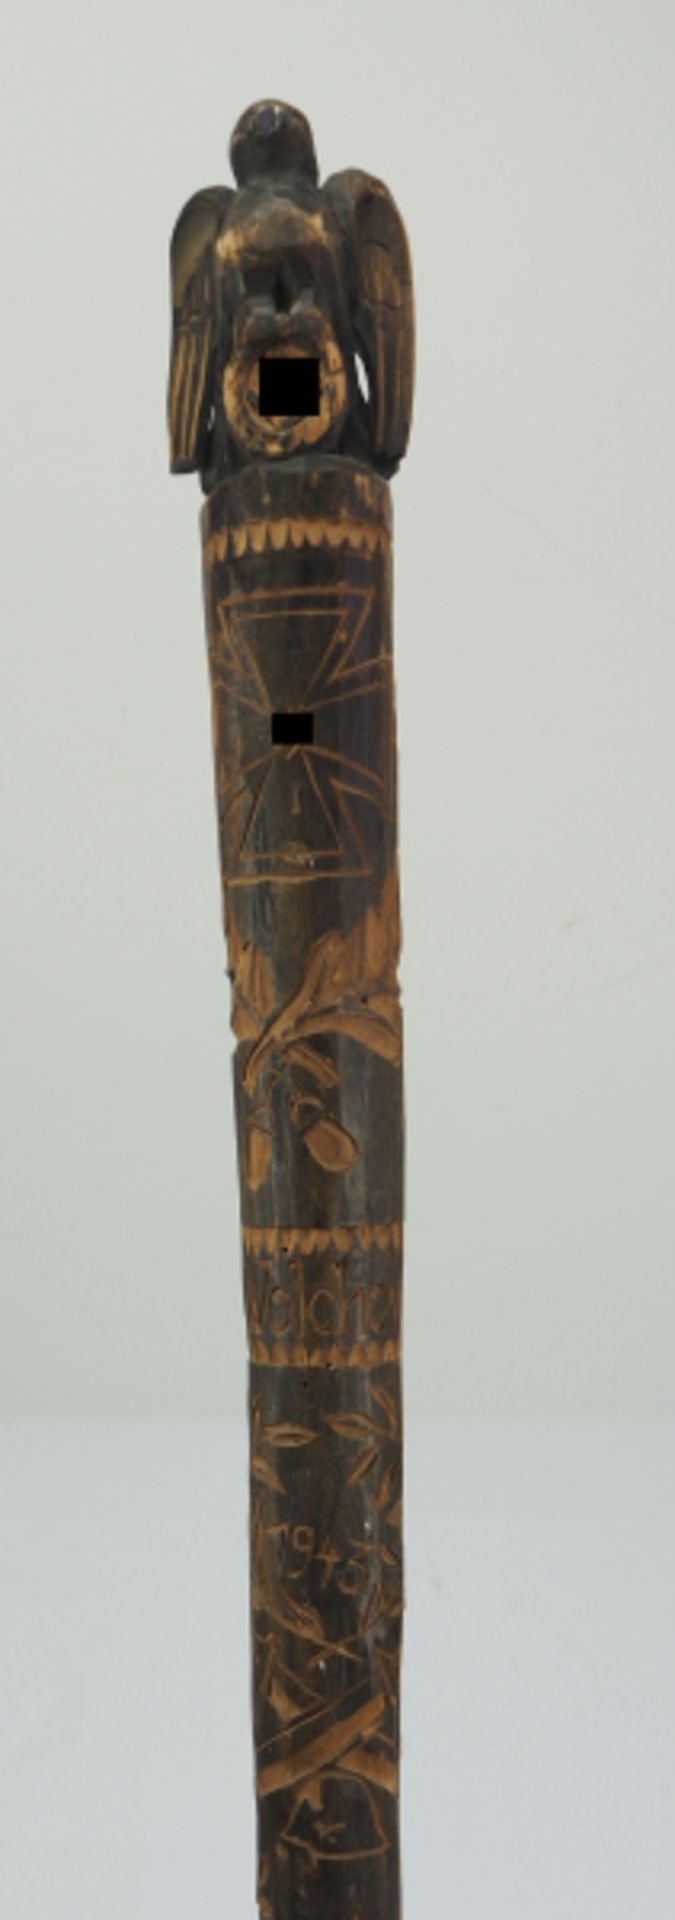 Wolchow Stock 1943.Holz, aufwendig geschnitzt, die Oberfläche gedunkelt, der Abschluss wird durch